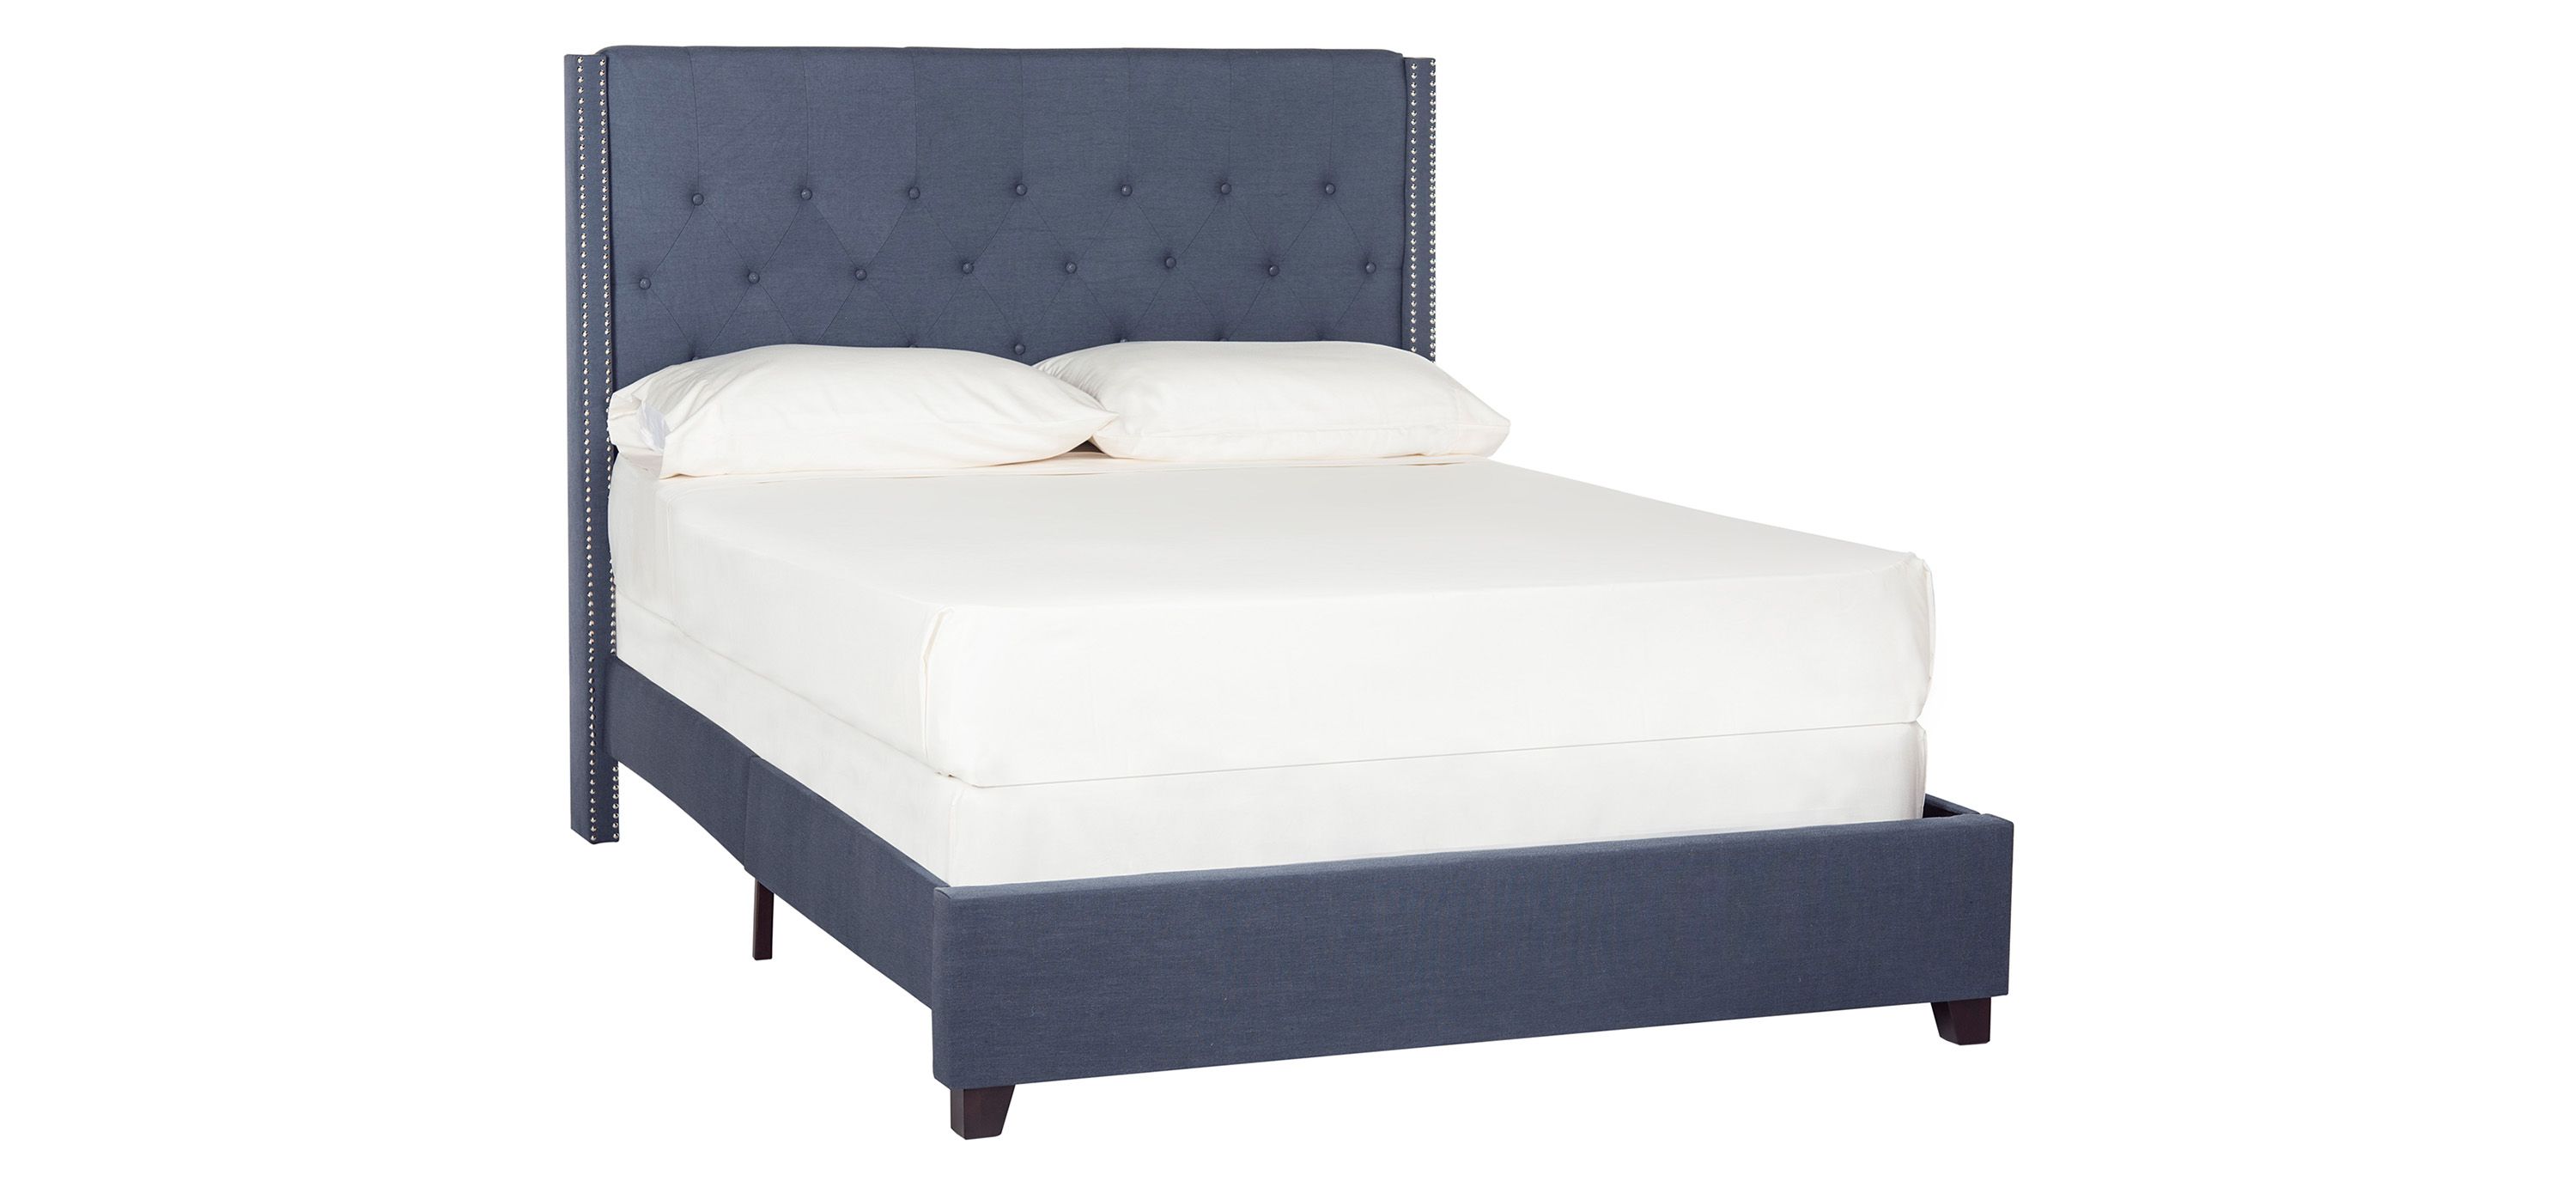 Winslet Upholstered Queen Bed